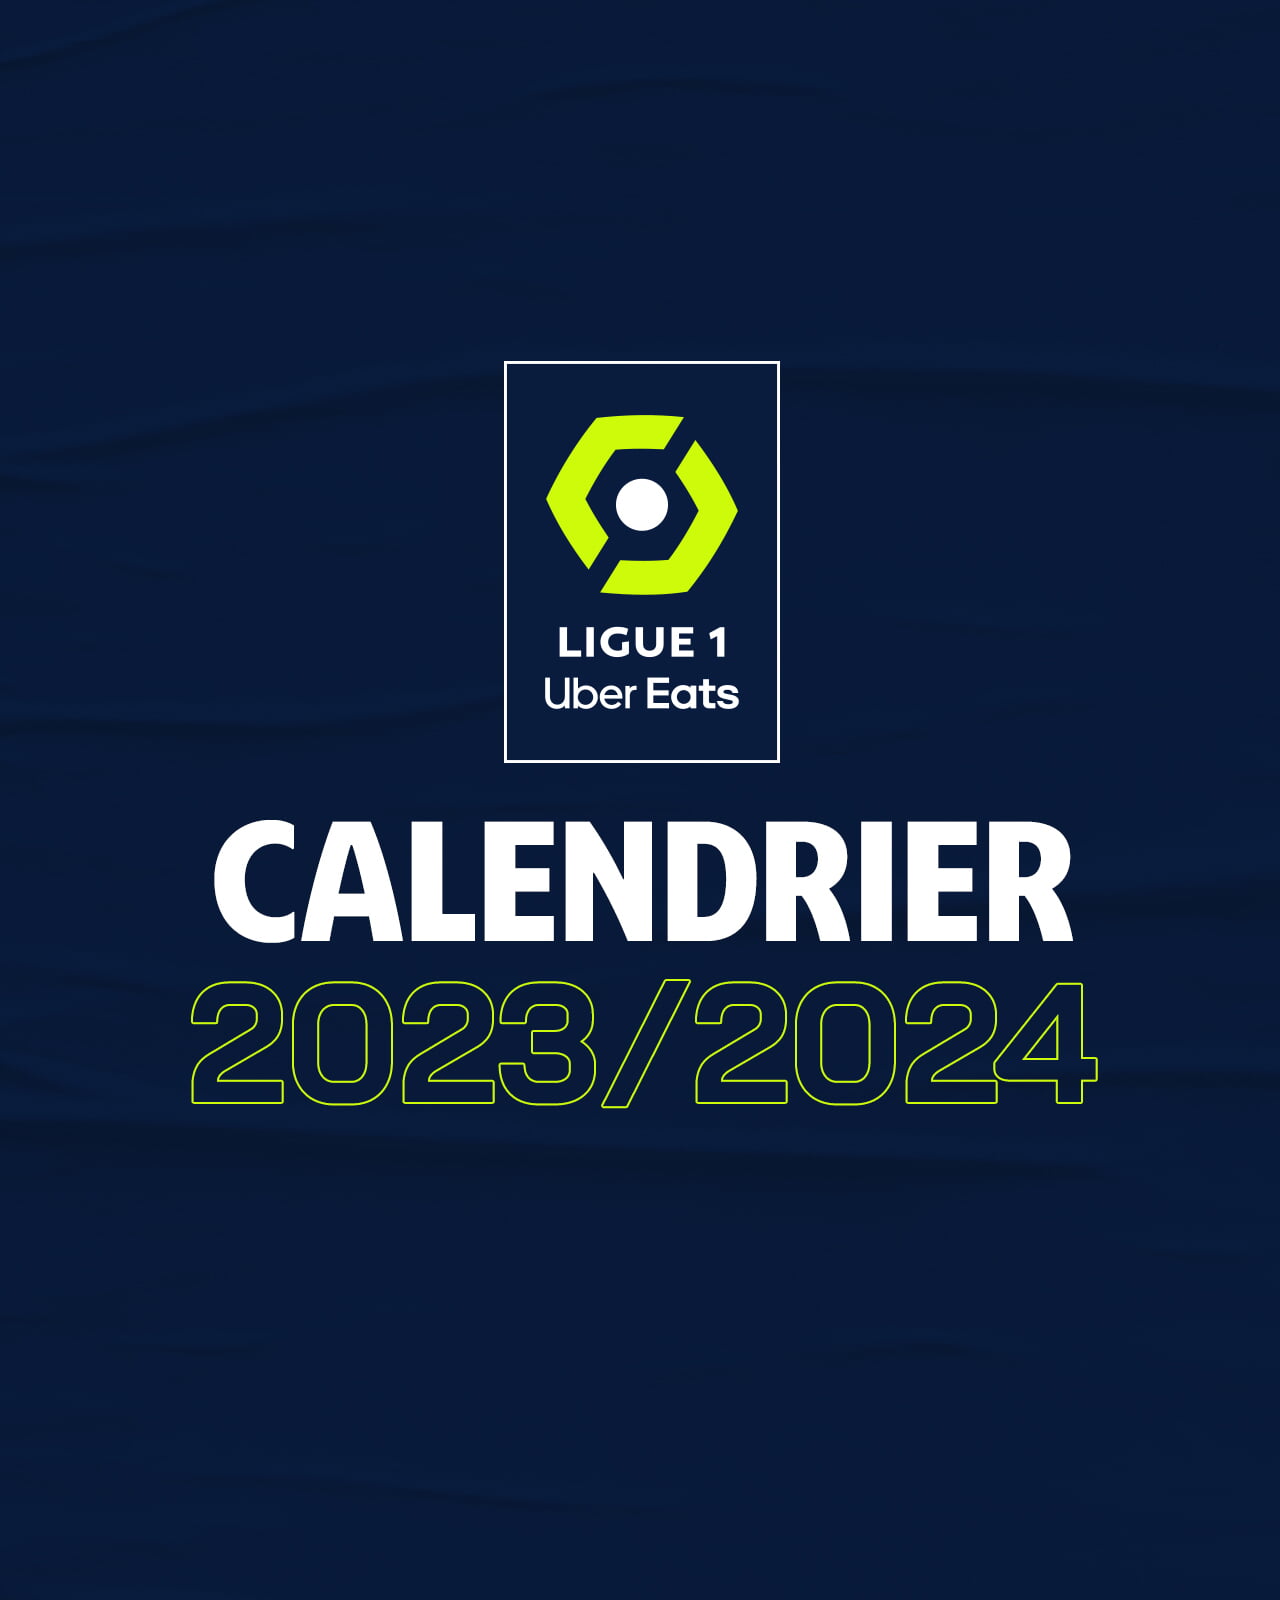 PSG : le calendrier complet du Paris Saint-Germain en Ligue 1 saison  2022-2023